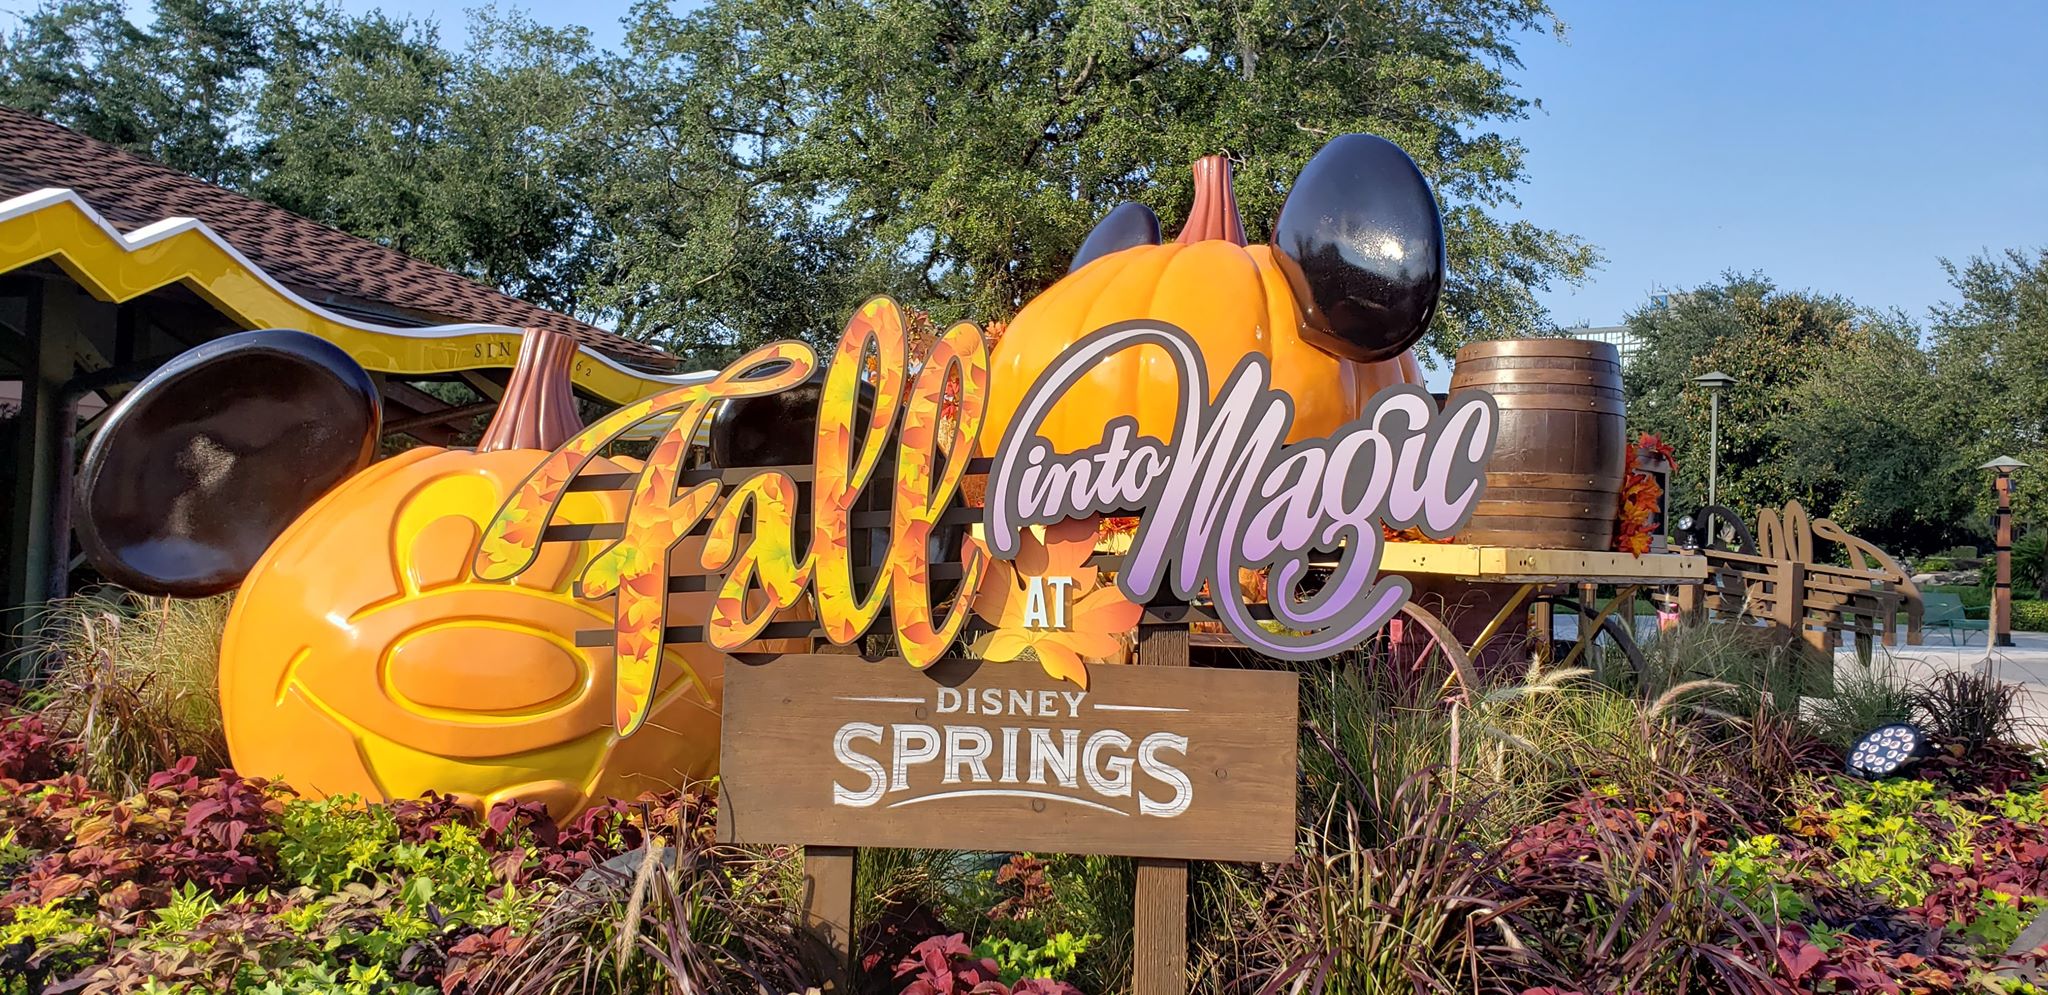 Fall into Magic at Disney Springs